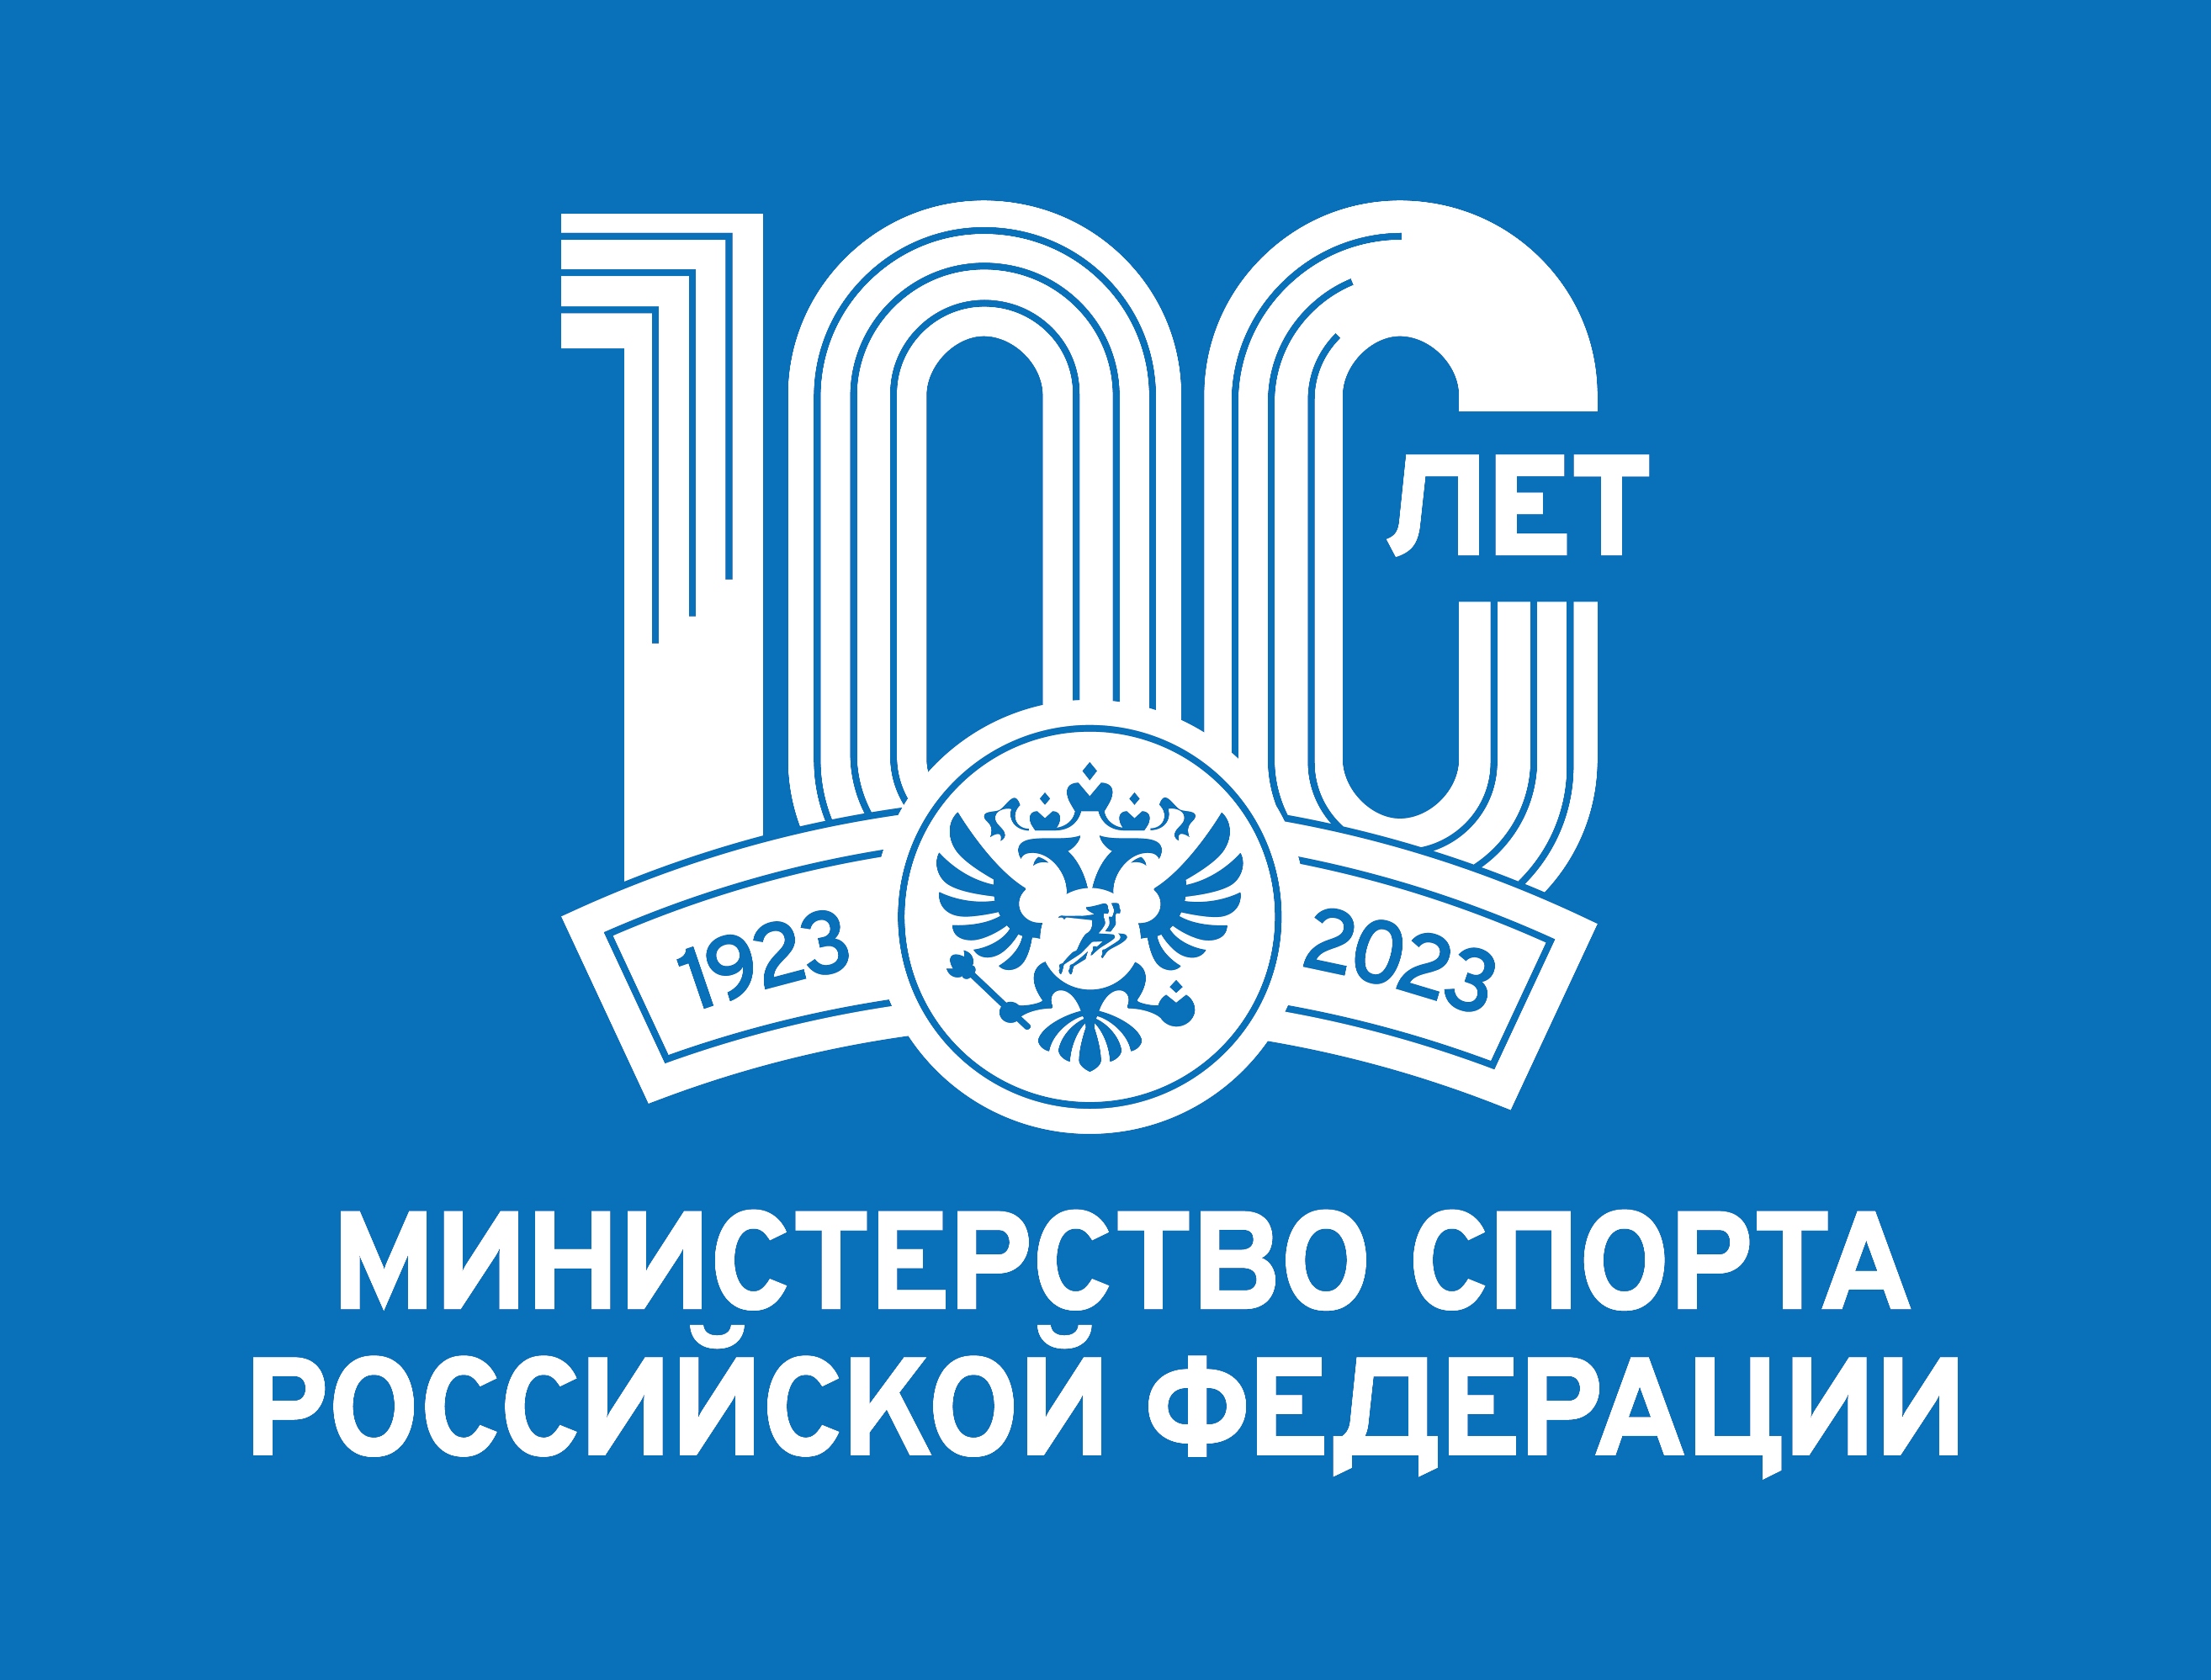 Министерству спорта Российской федерации — 100 лет!